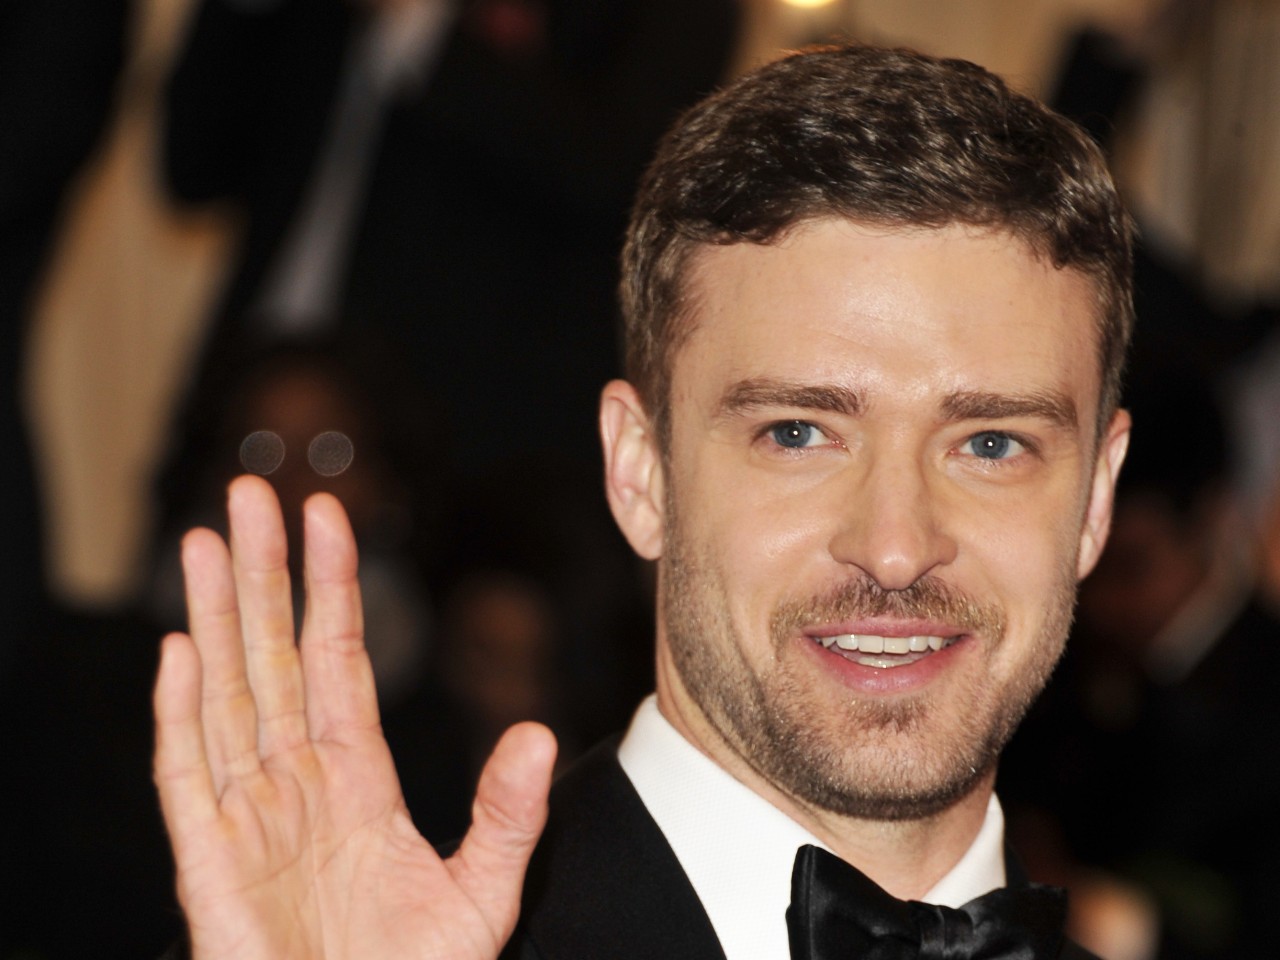 Vestea proasta primita de Justin Timberlake. Matusa lui a fost arestata pentru furt